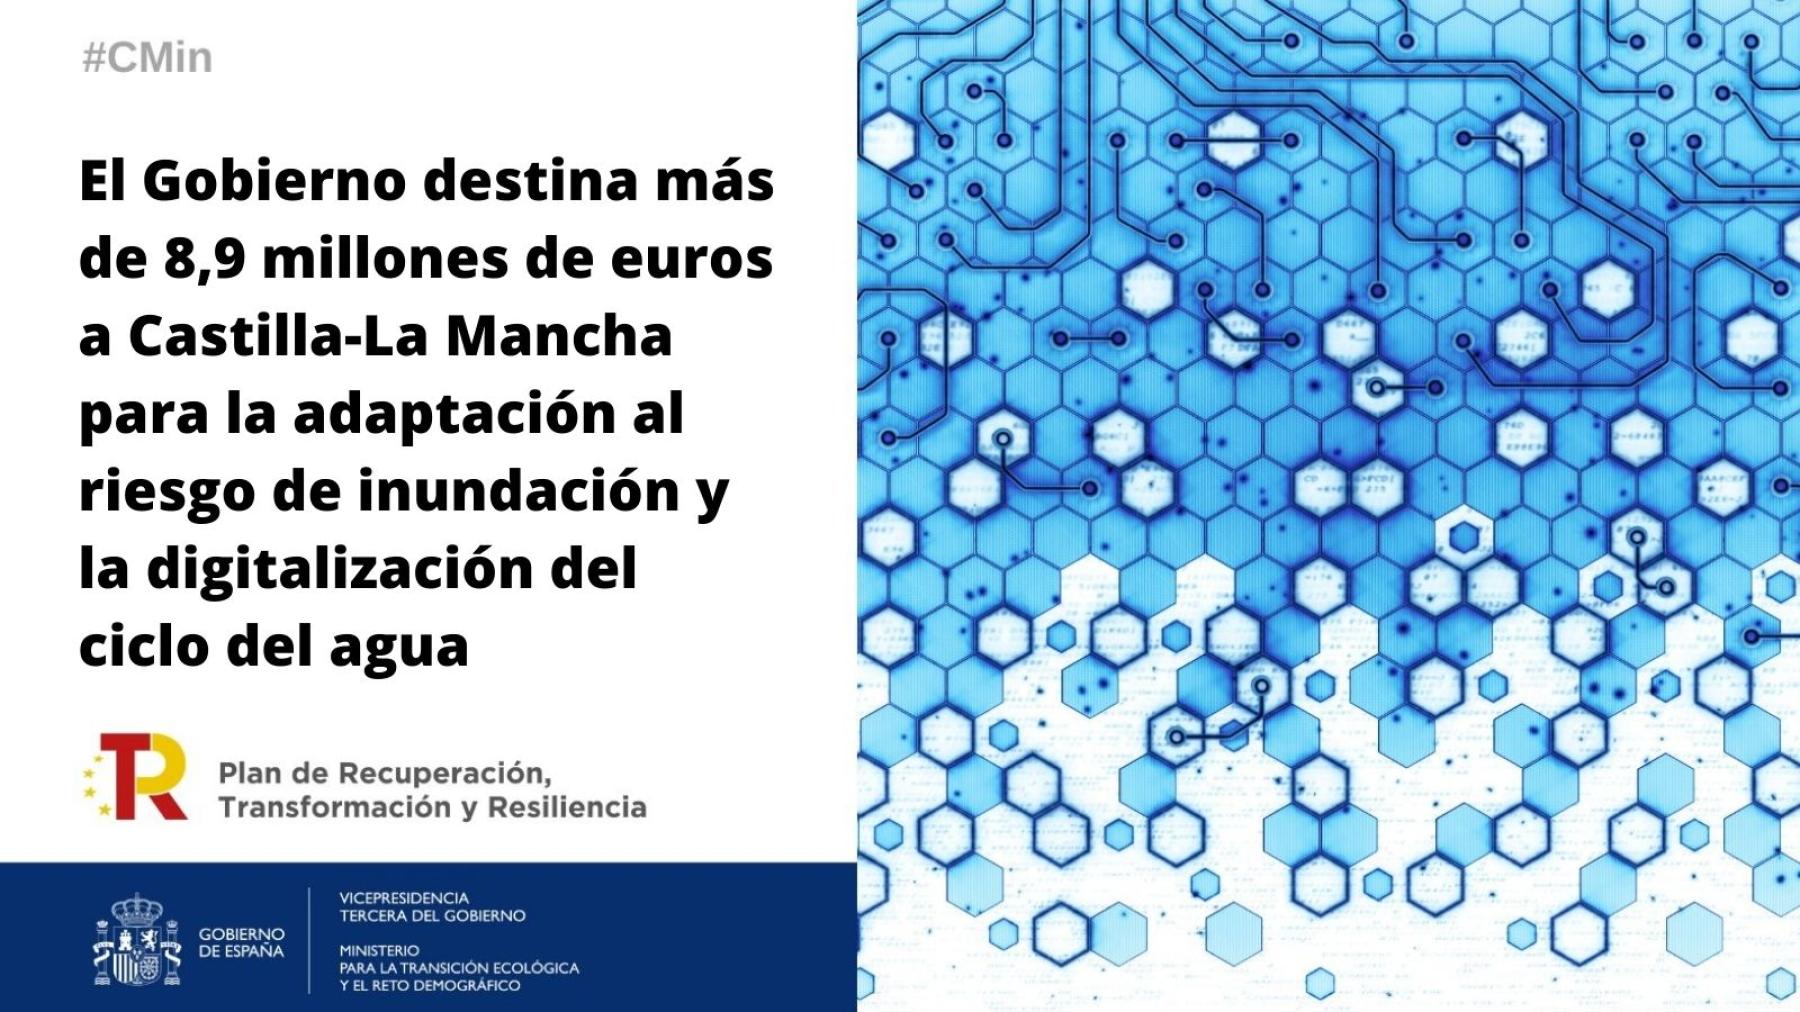 El Gobierno destina más de 8,9 millones de euros a Castilla-La Mancha para la adaptación al riesgo de inundación y la digitalización del ciclo del agua